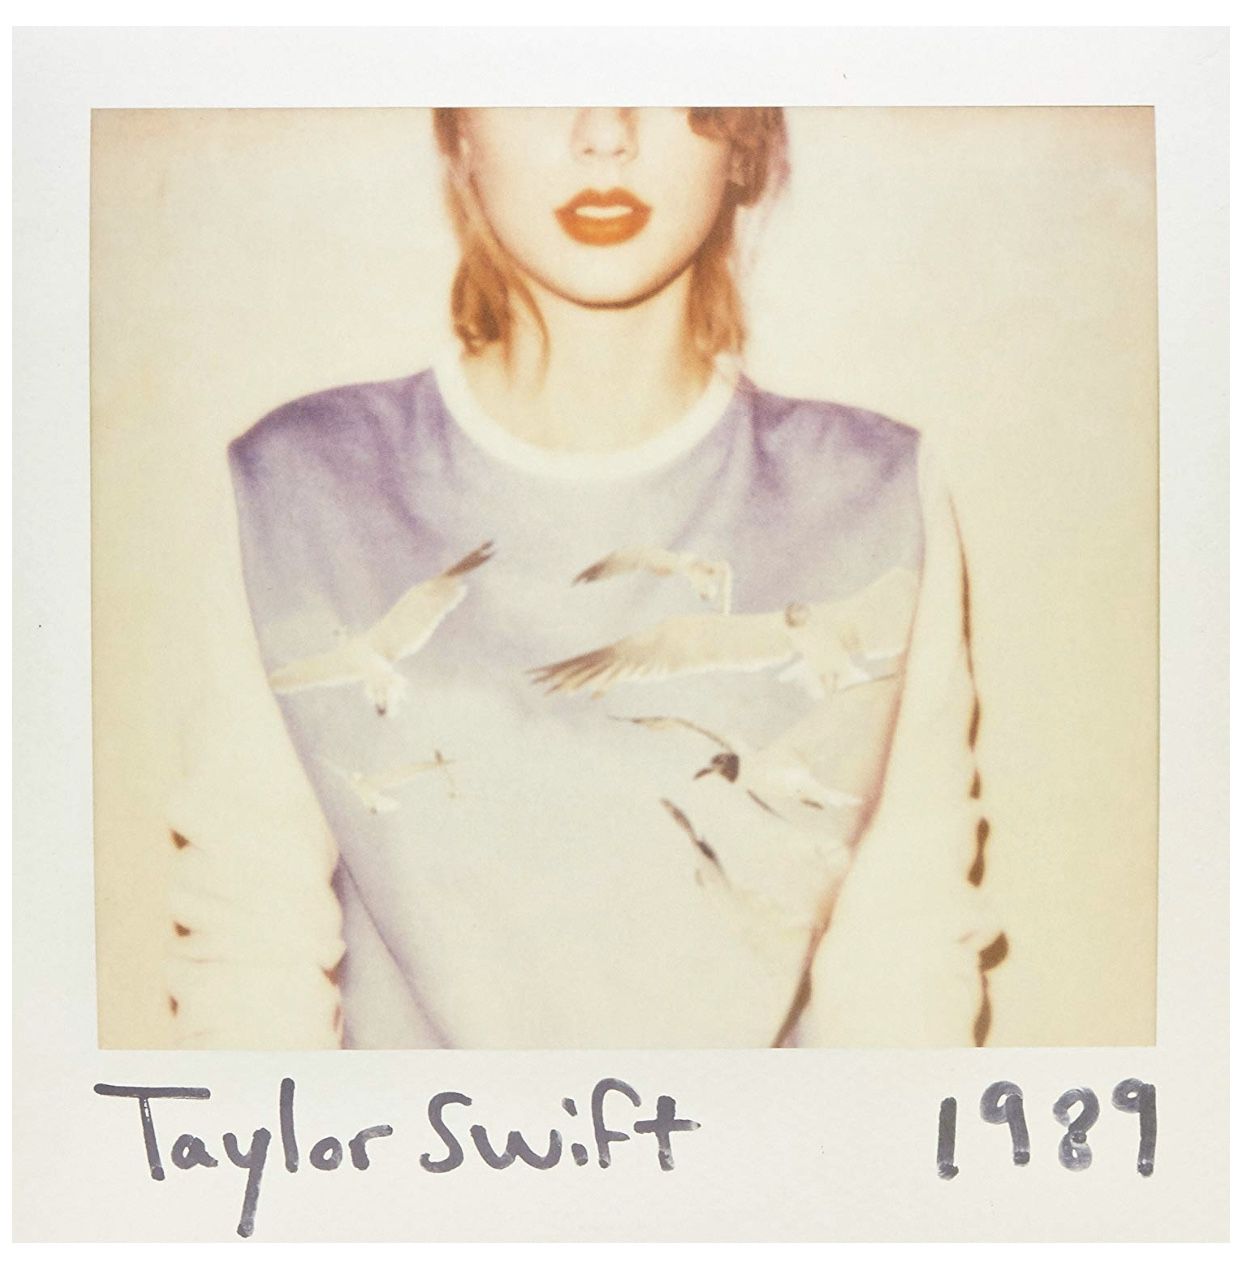 Taylor Swift-1989 on vinyl